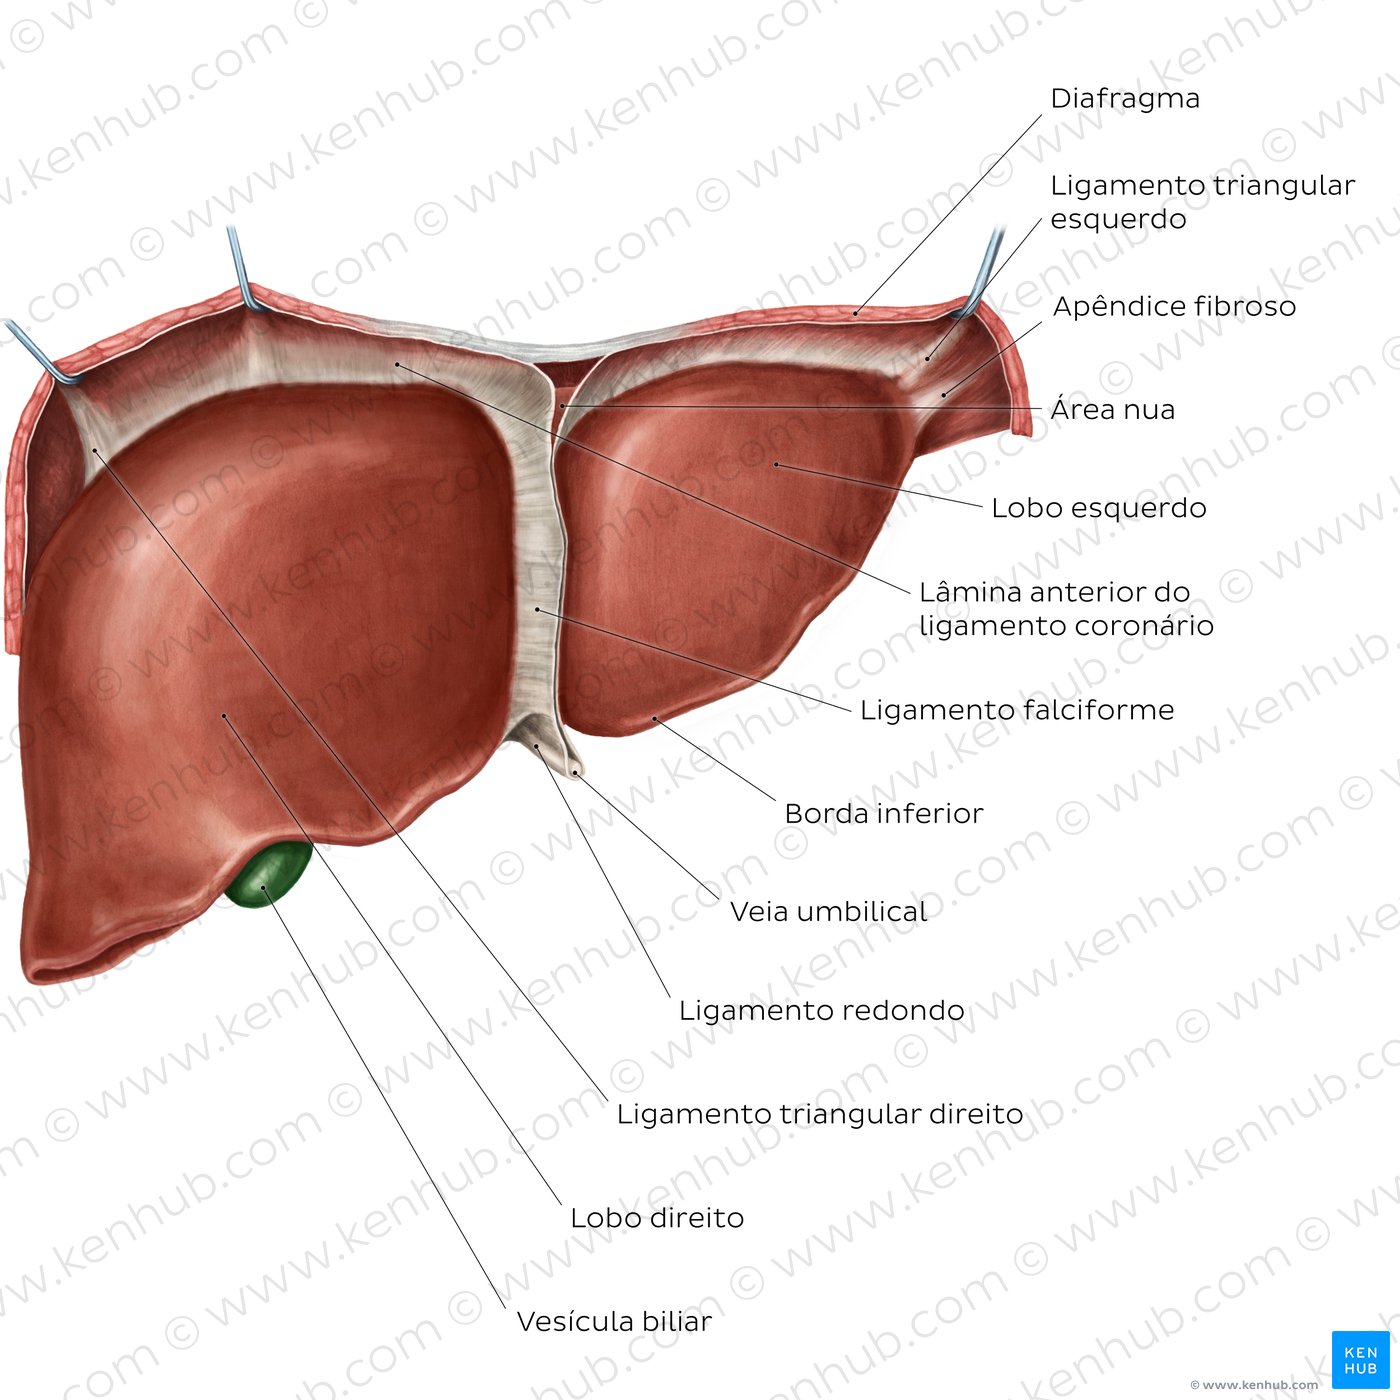 Anatomia do fígado - vista anterior